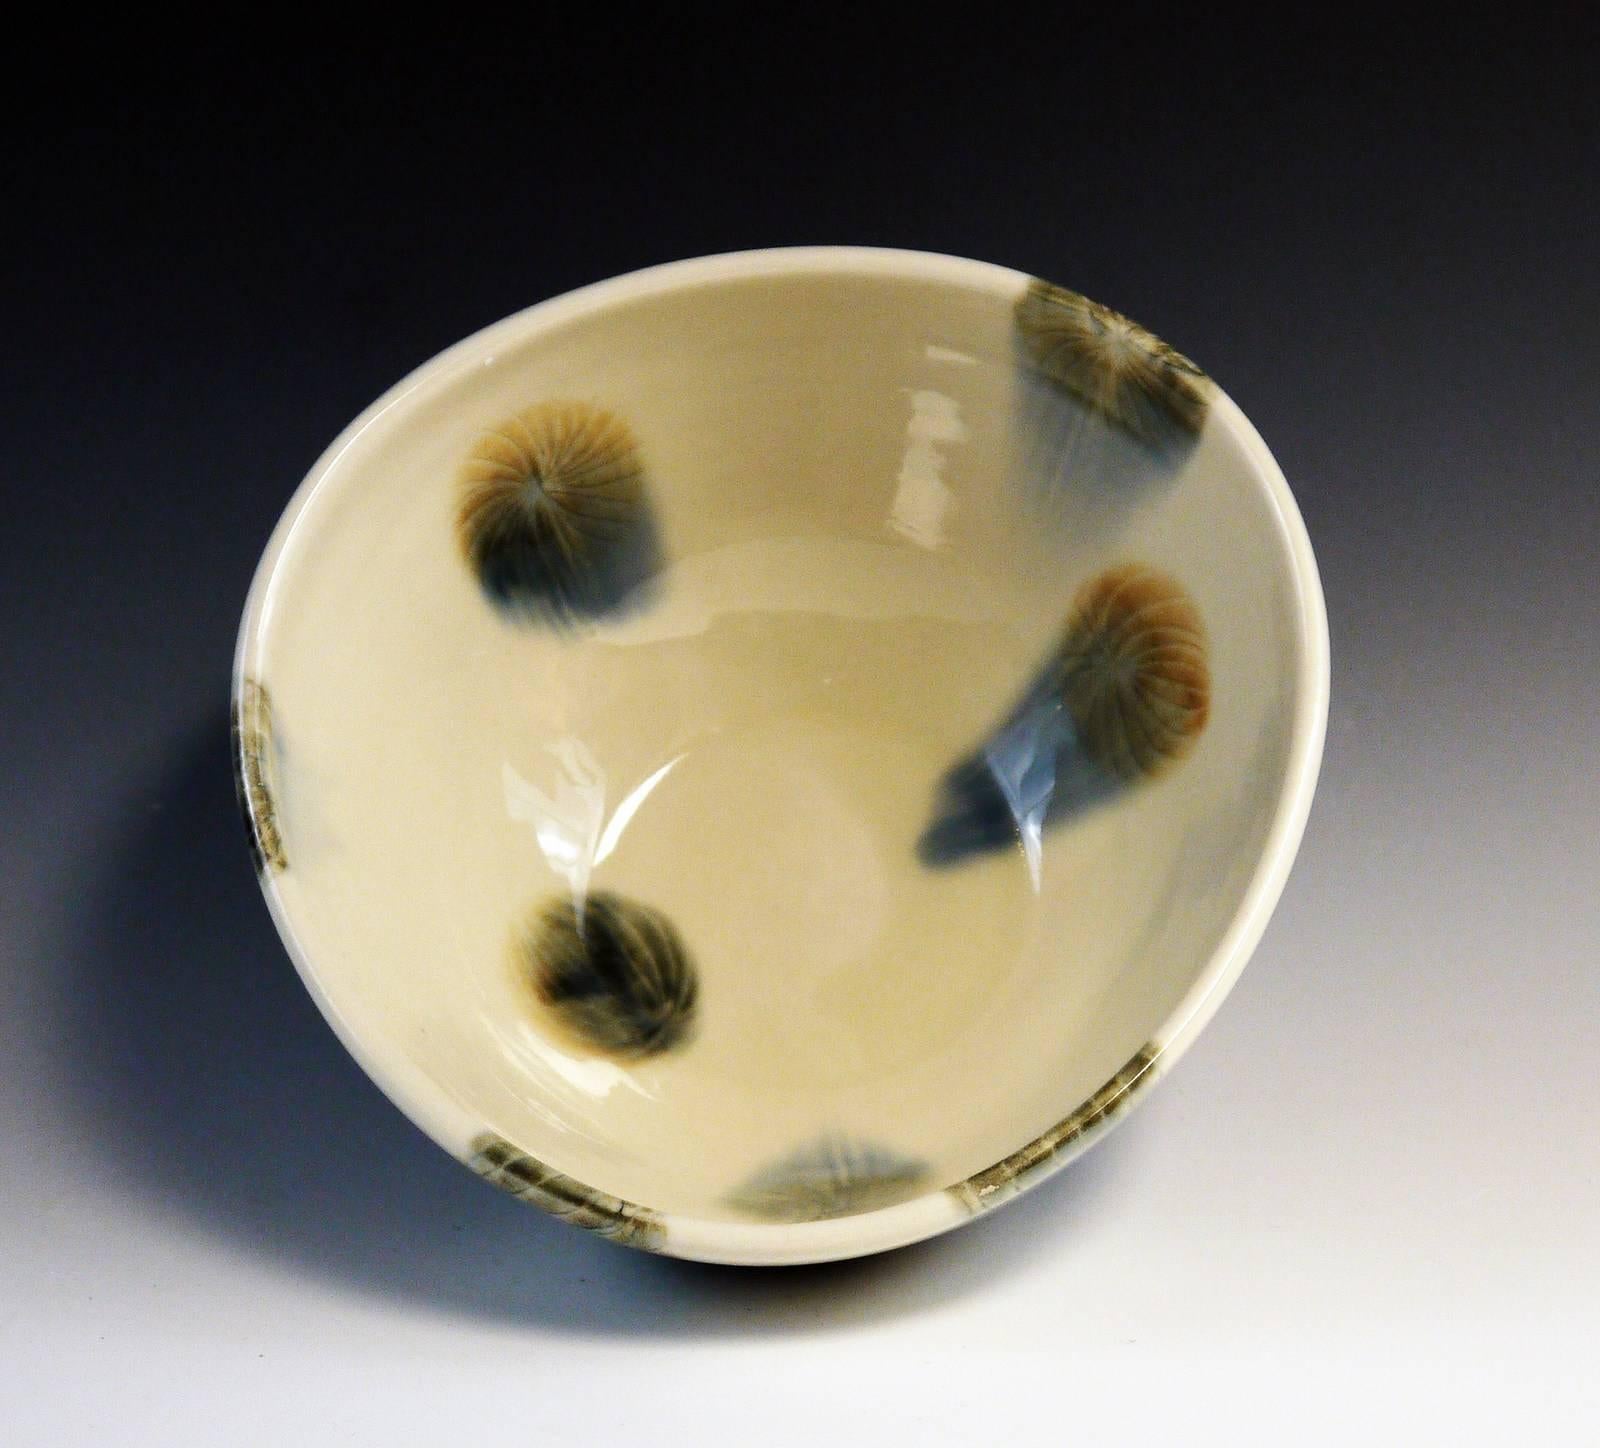 Title : Bowl
Materials : Porcelain, Underglaze, Glaze
Date : 2017
Dimensions :
Description : Soft Gray Lantern Pattern